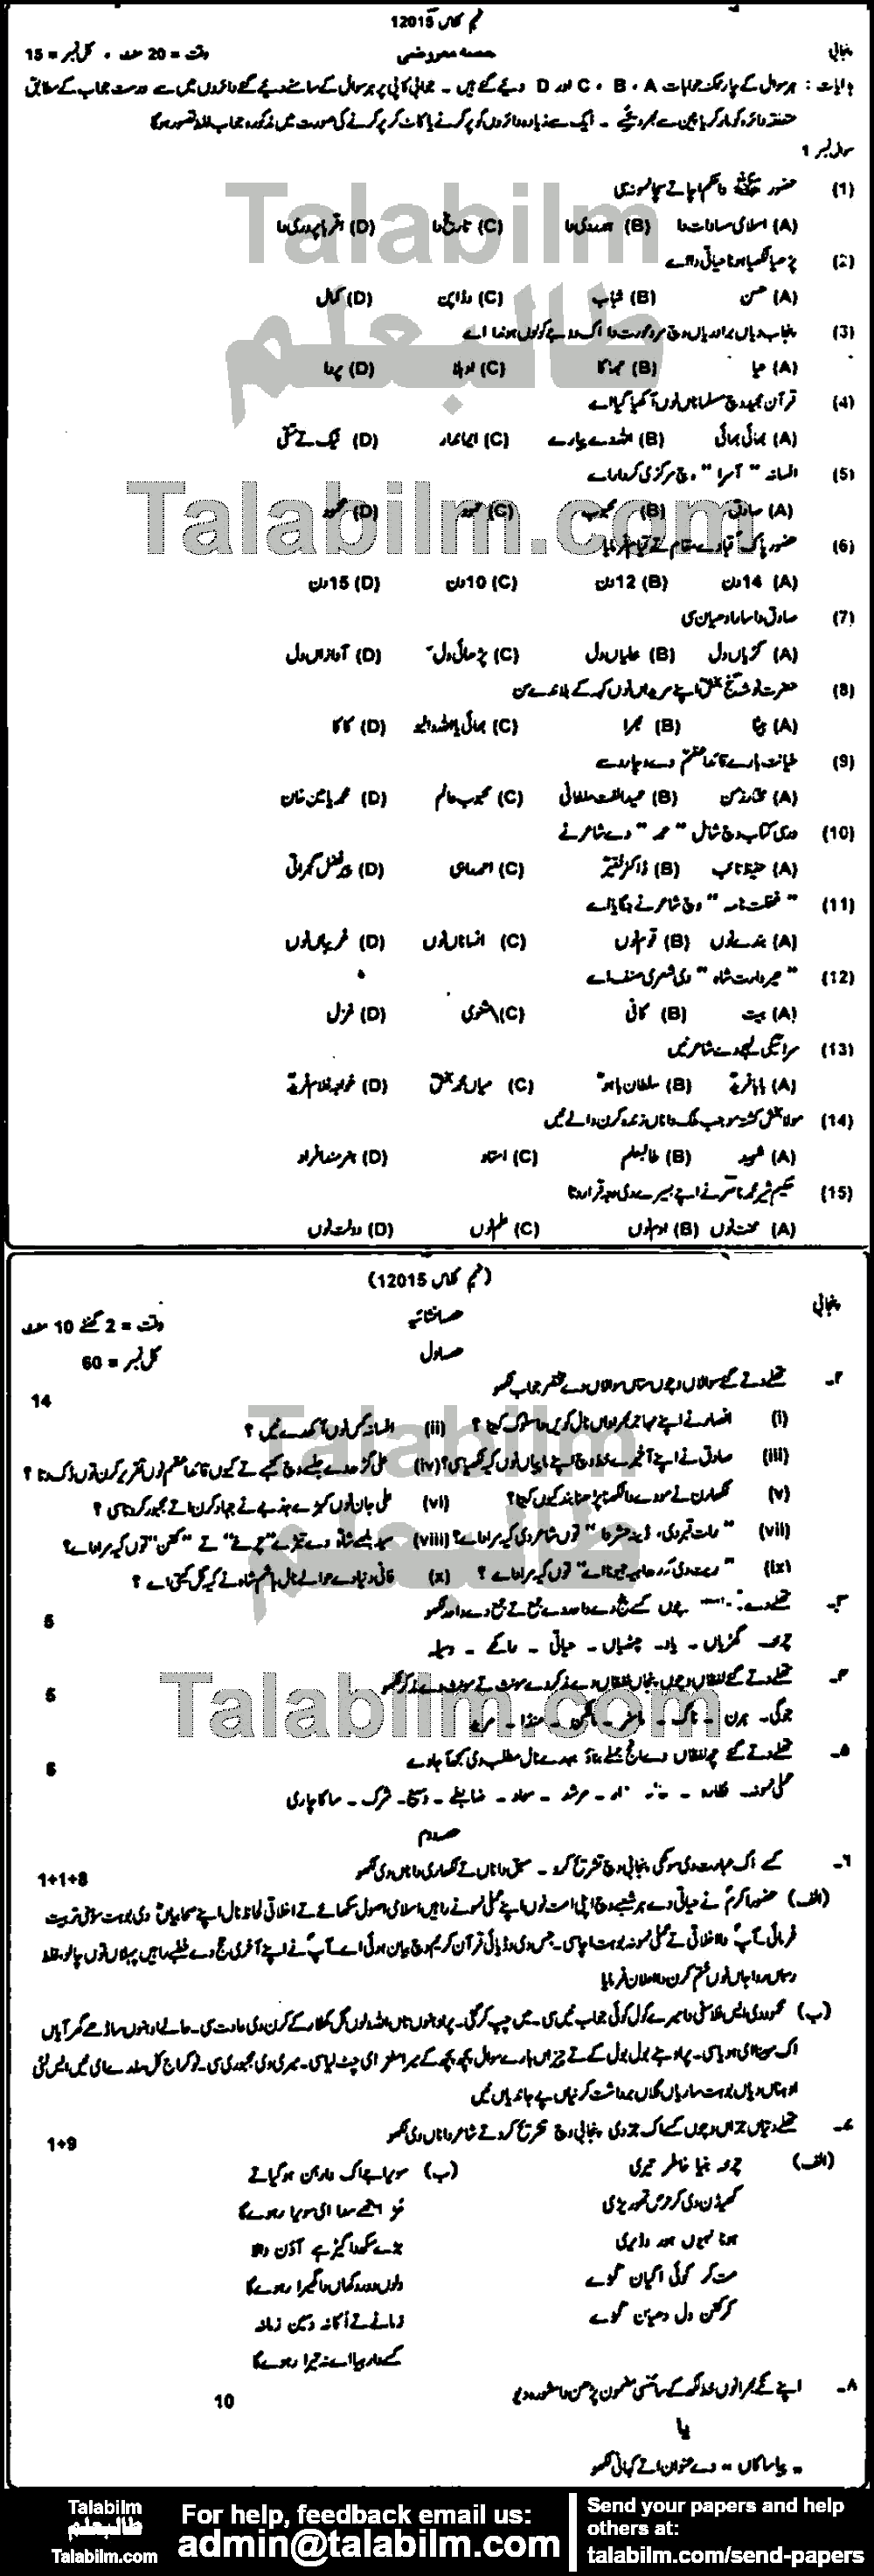 Punjabi 0 past paper for Urdu Medium 2015 Group-I